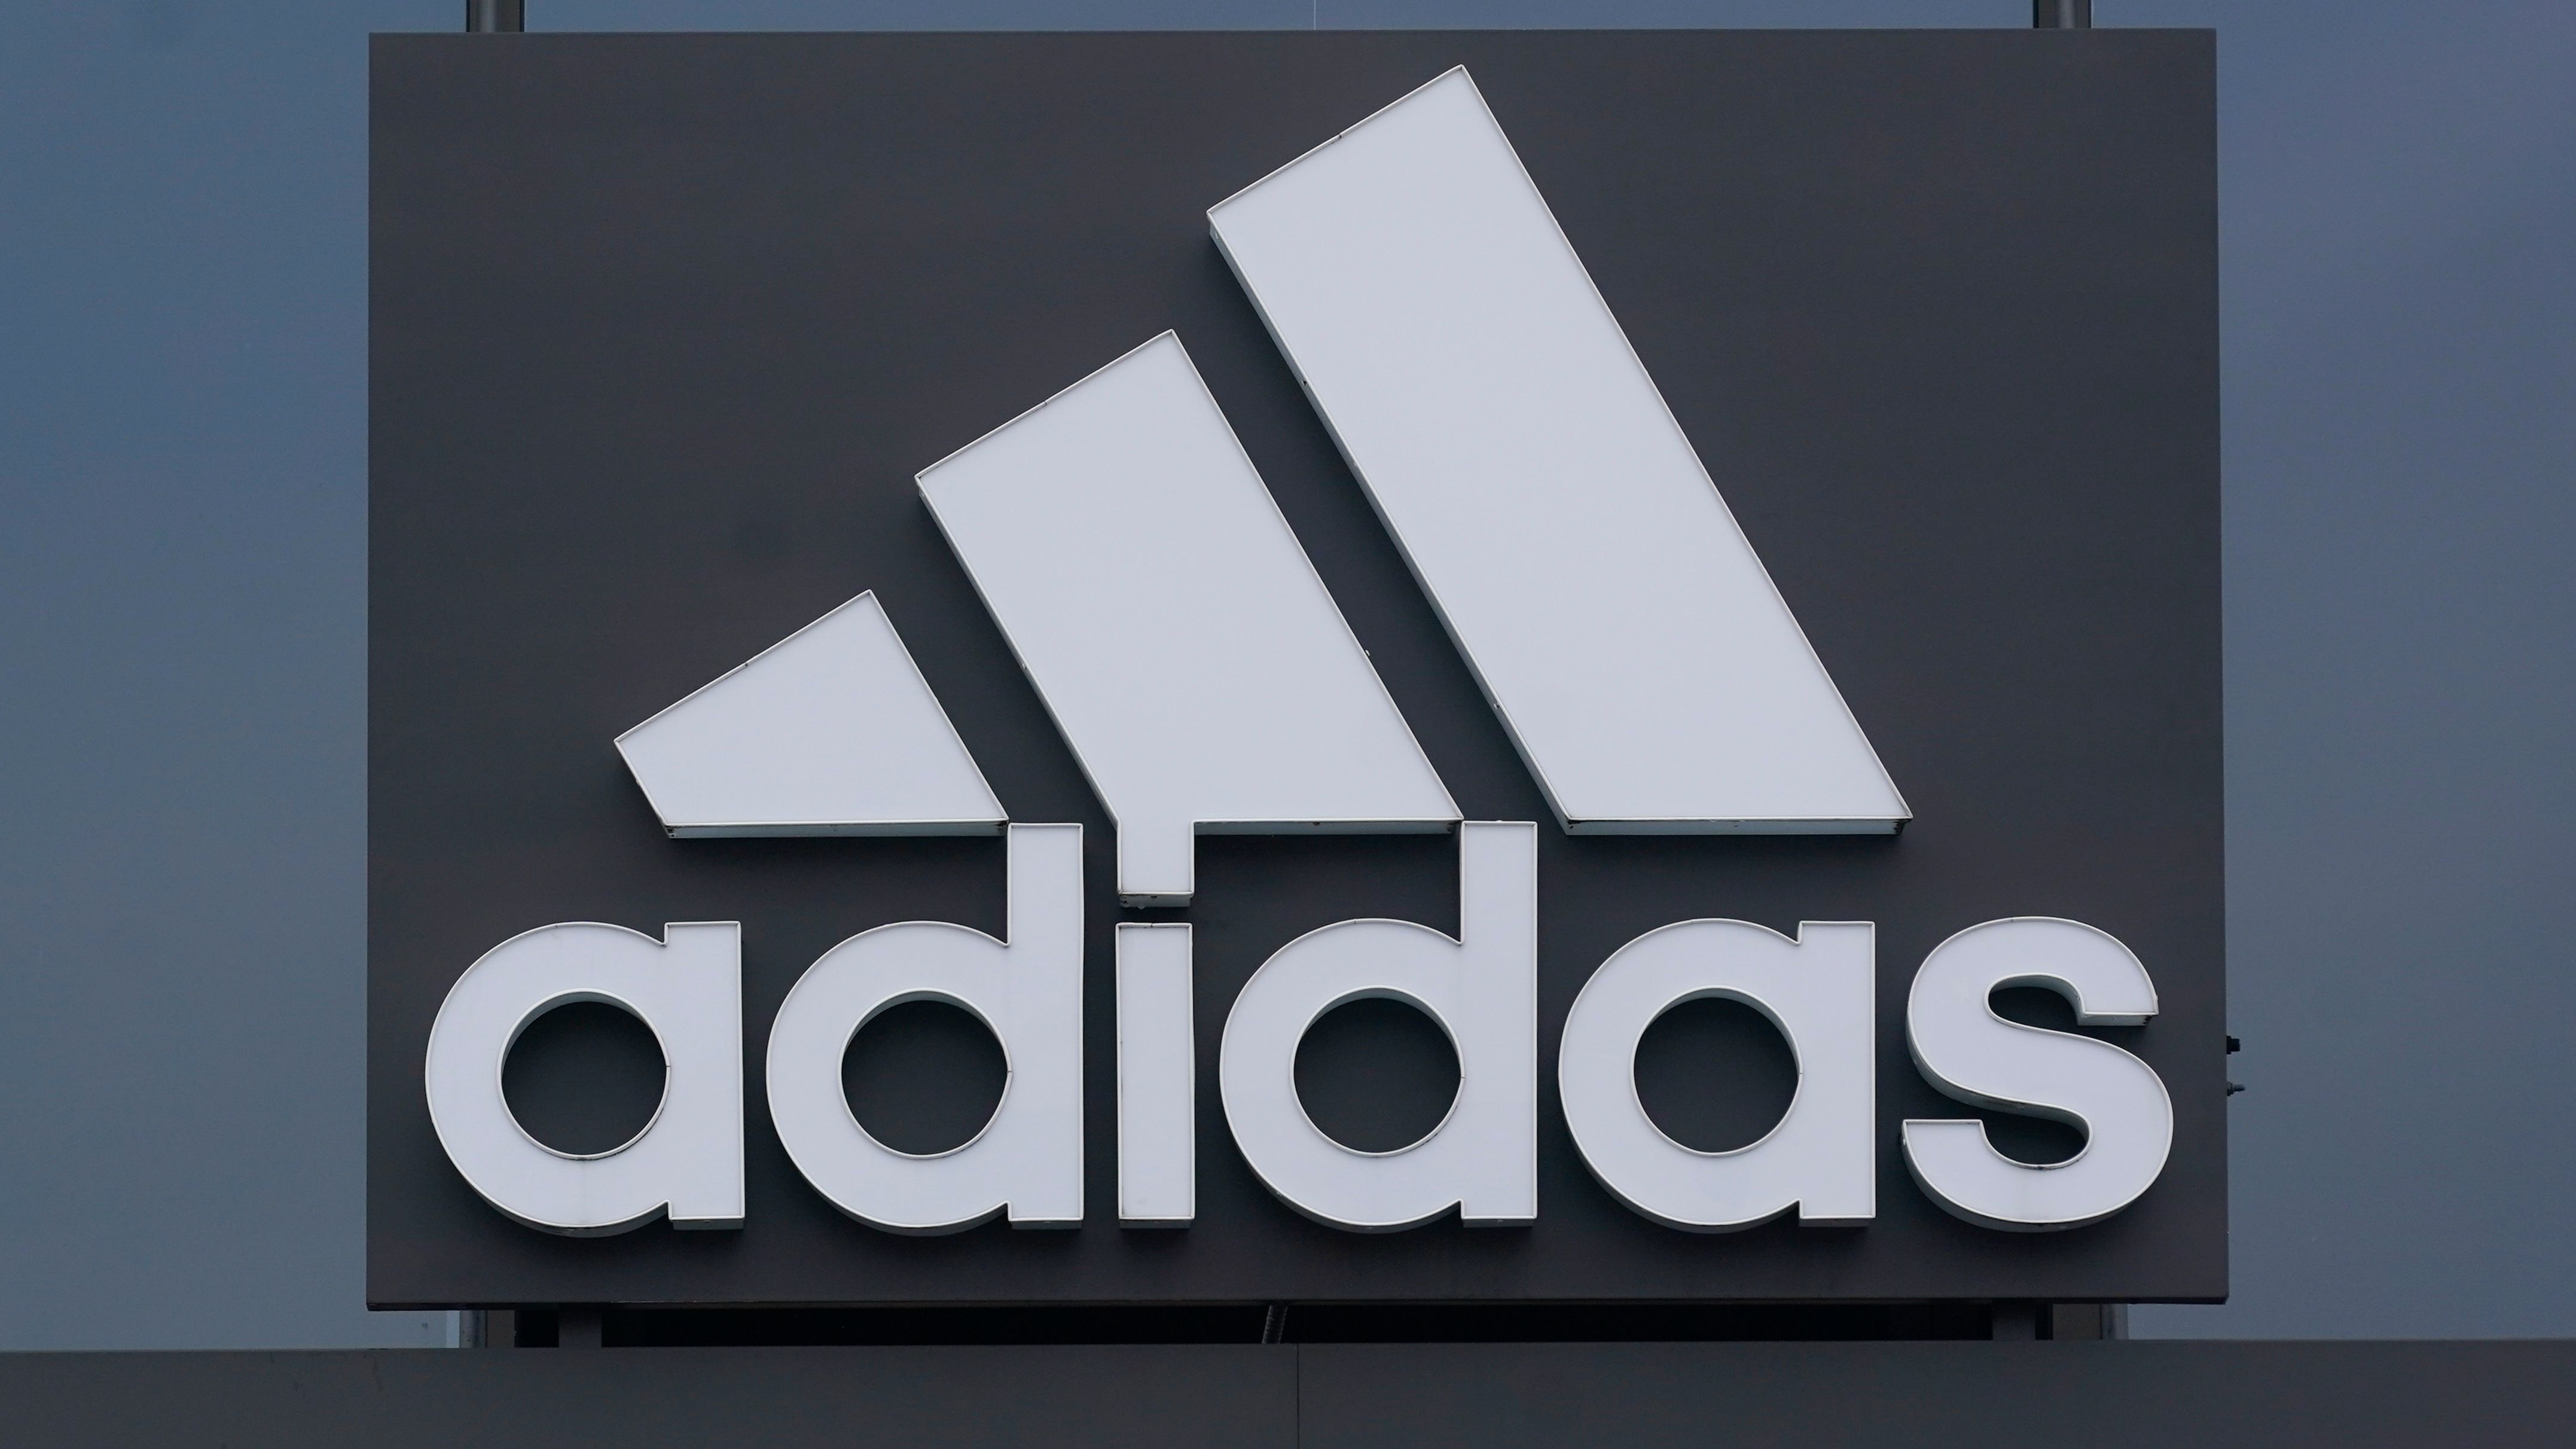 Der Sportartikelhersteller Adidas wird von US-Investoren verklagt, nachdem dieser die Kooperation mit dem Rapper Kanye West auf Grund antisemitischer Äußerungen plötzlich beendet hatte.